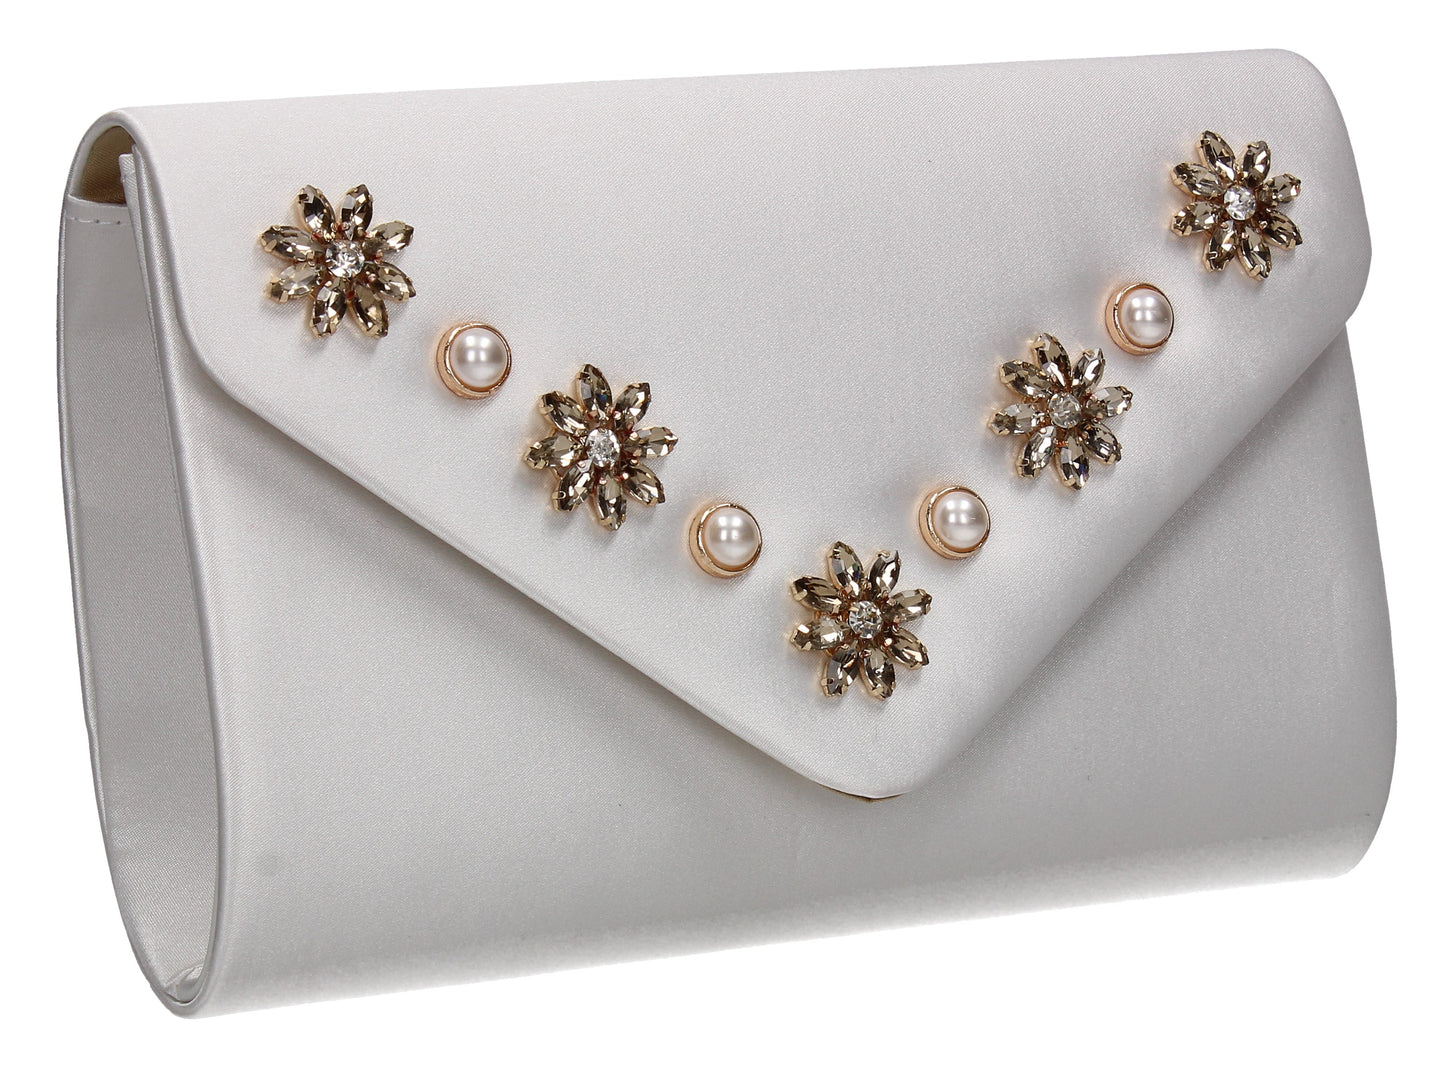 SWANKYSWANS Leila Clutch Bag Cream Cute Cheap Clutch Bag For Weddings School and Work